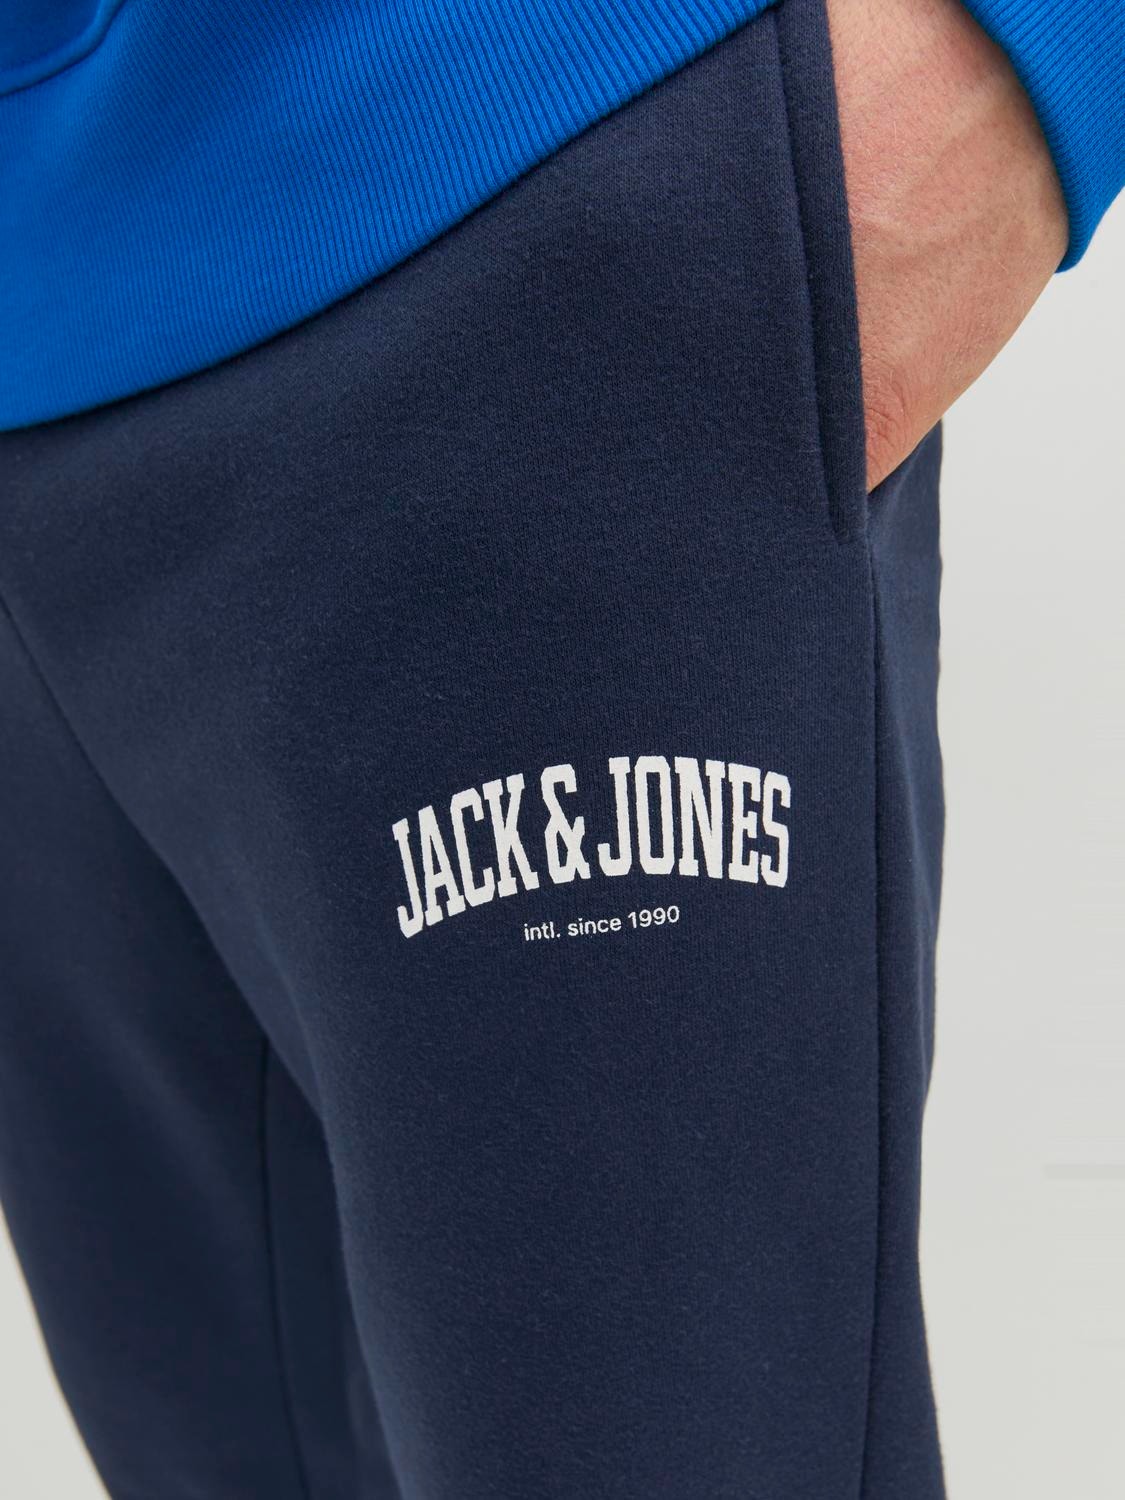 Jack & Jones Loose Fit Tepláky -Navy Blazer - 12236479